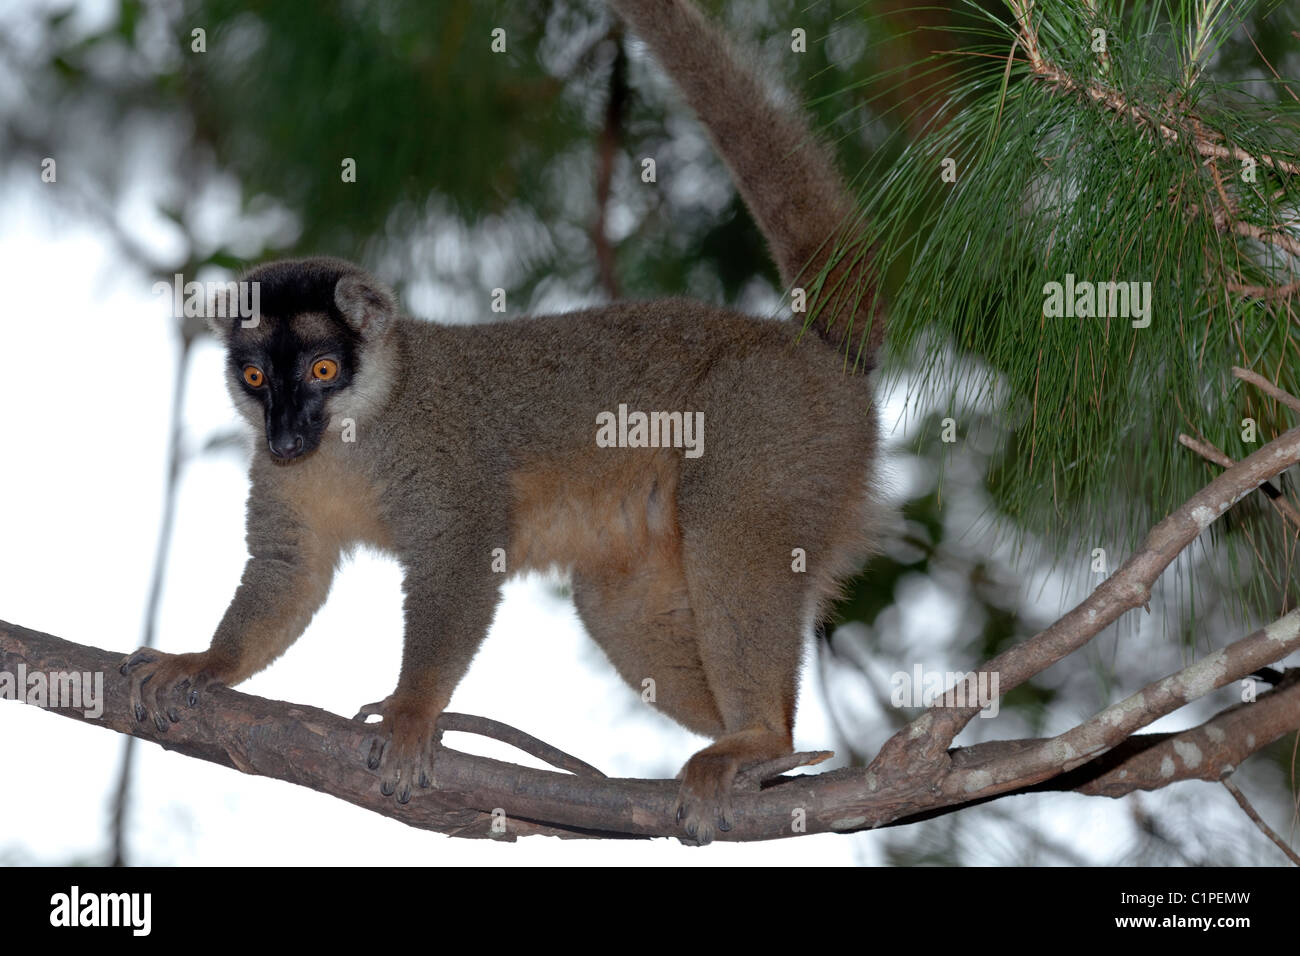 Gemeinsame Braun Lemur (Eulemur fulvus). f. Madagaskar. Nach vorne zeigende Augen lassen Urteil von Distanzen. Schwanz ein Gegengewicht. Bekaempfbar Daumen zu greifen. Stockfoto